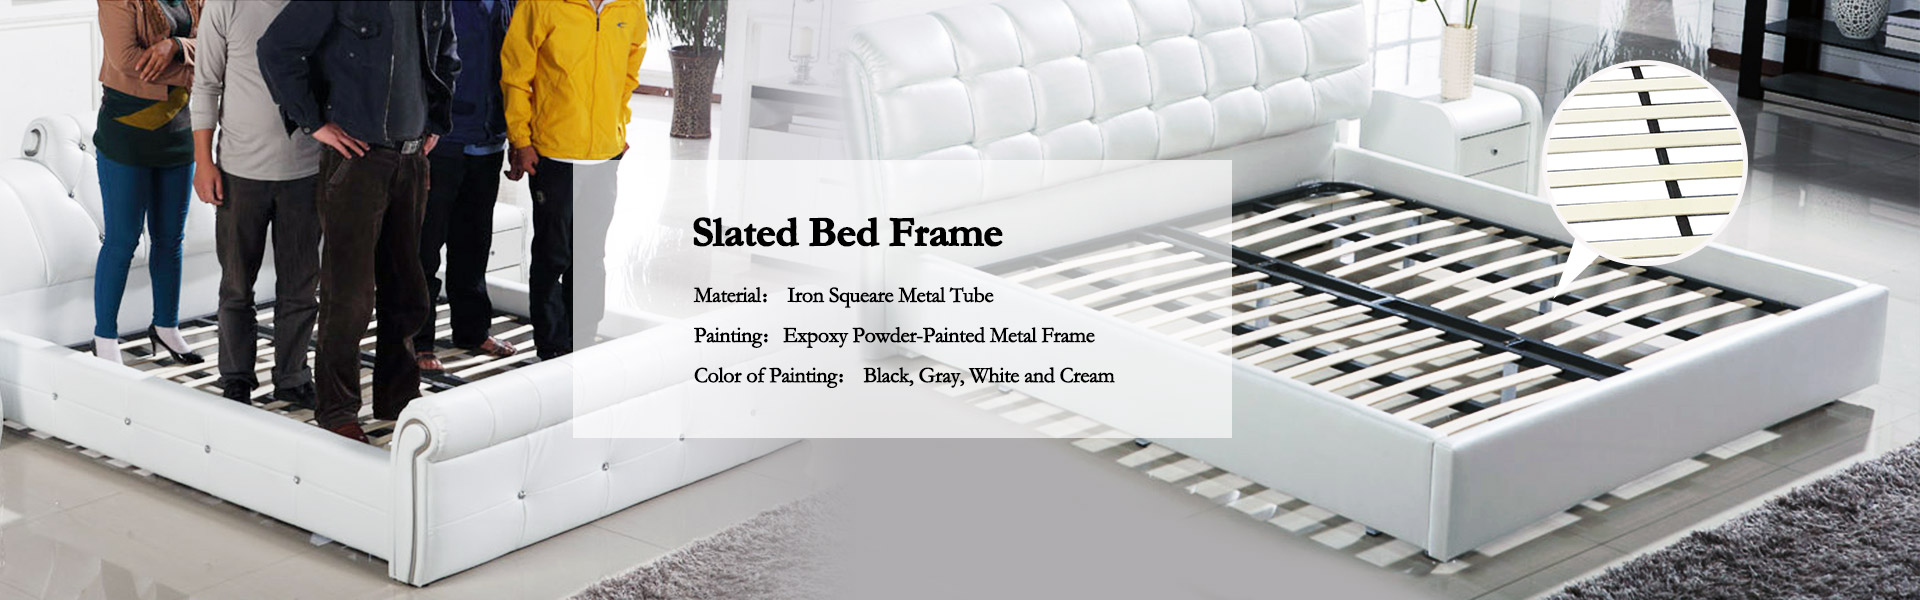 Slated-Bed-Frame